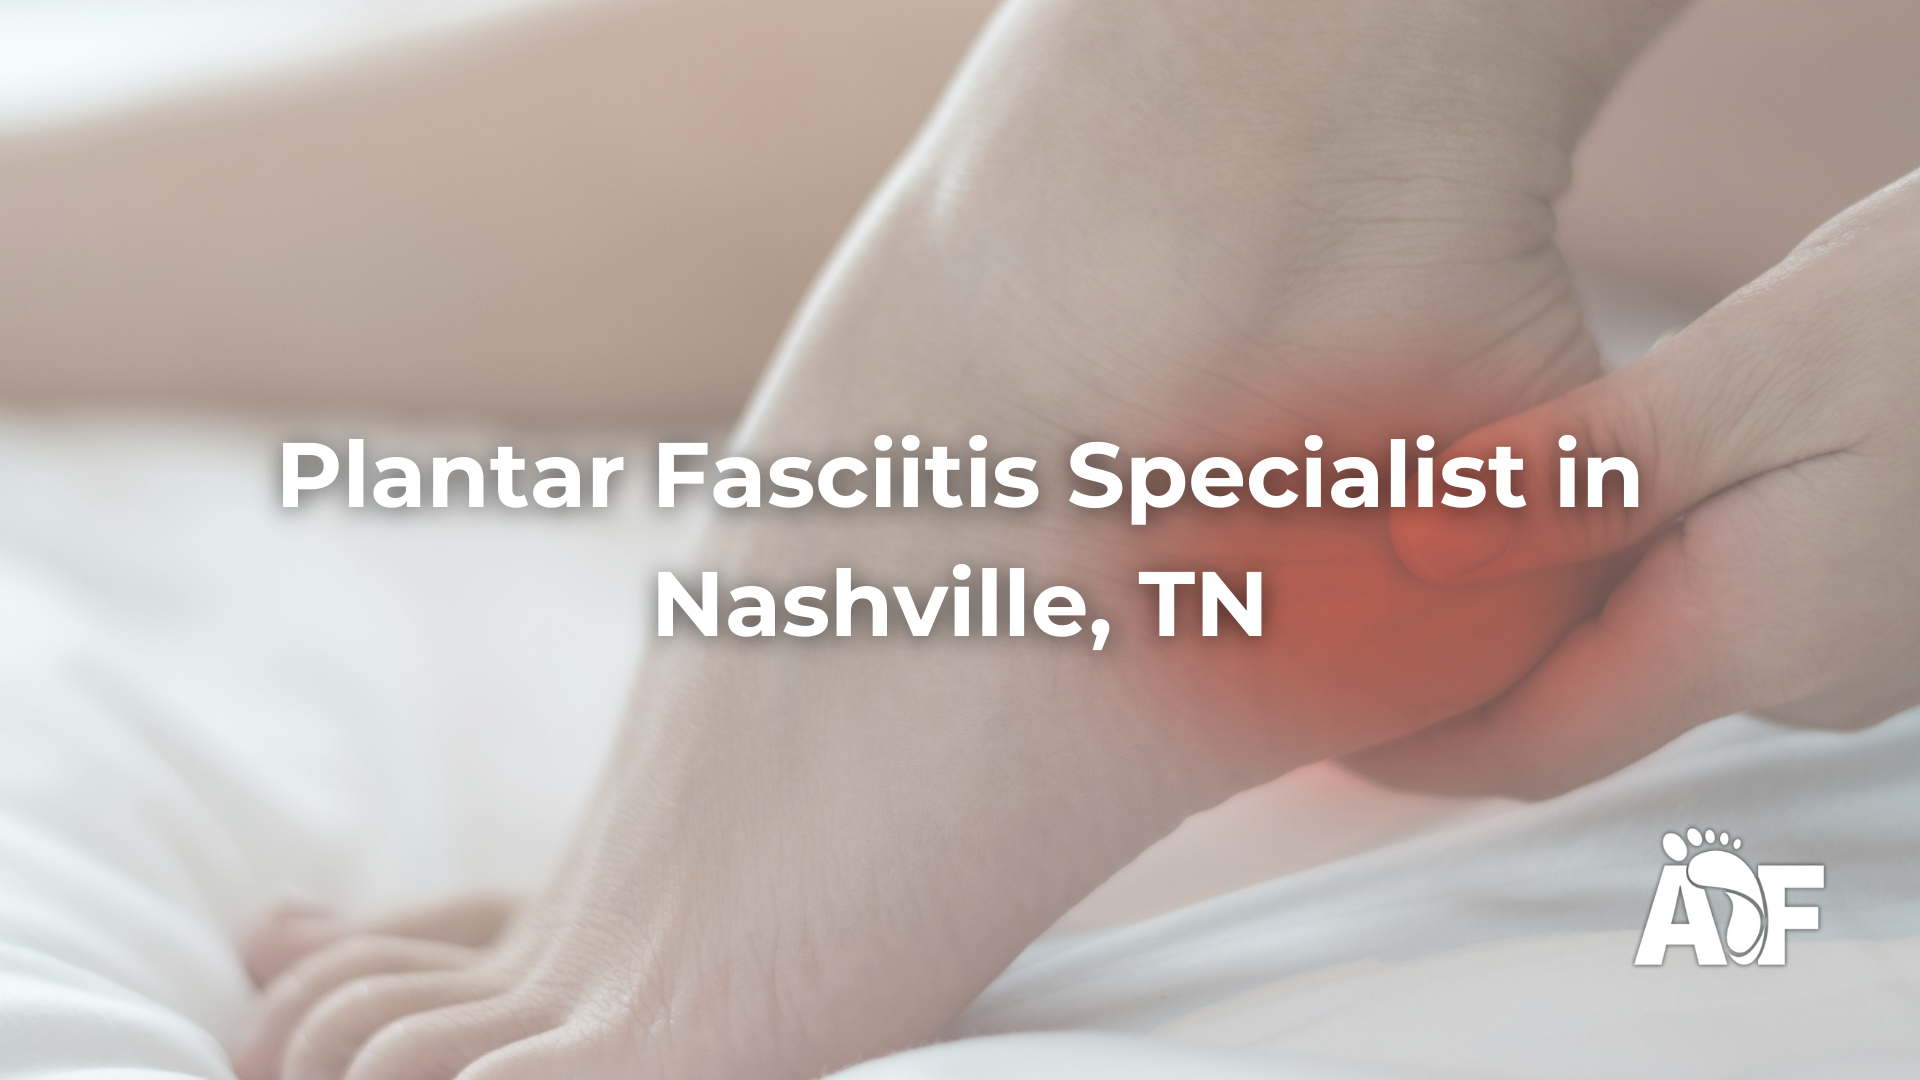 Plantar Fasciitis Specialist in Nashville, Tennessee